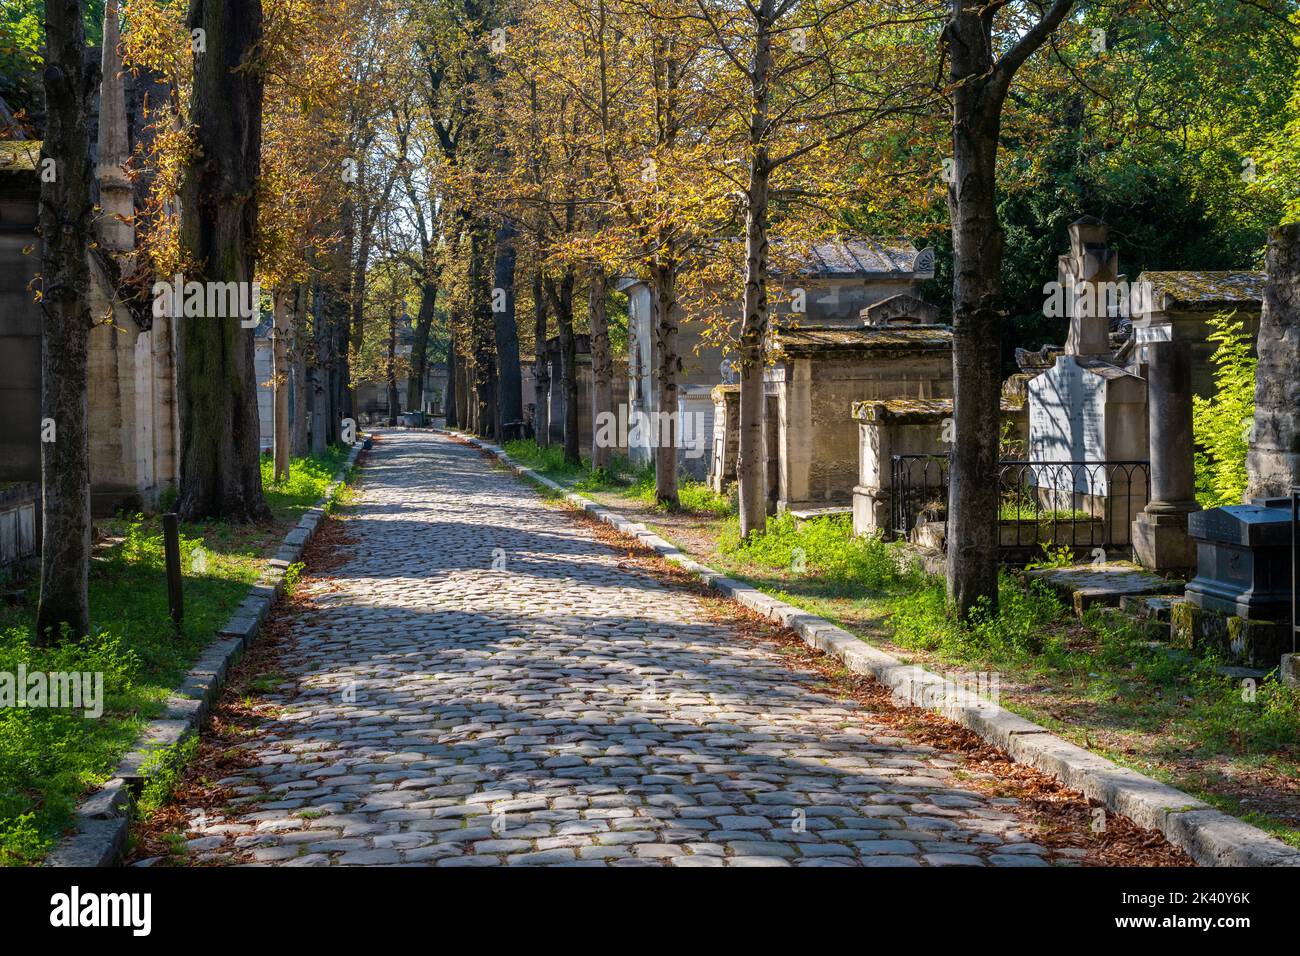 París, Francia - 31 de agosto de 2022: Lápidas en el cementerio de Pere-Lachaise Foto de stock